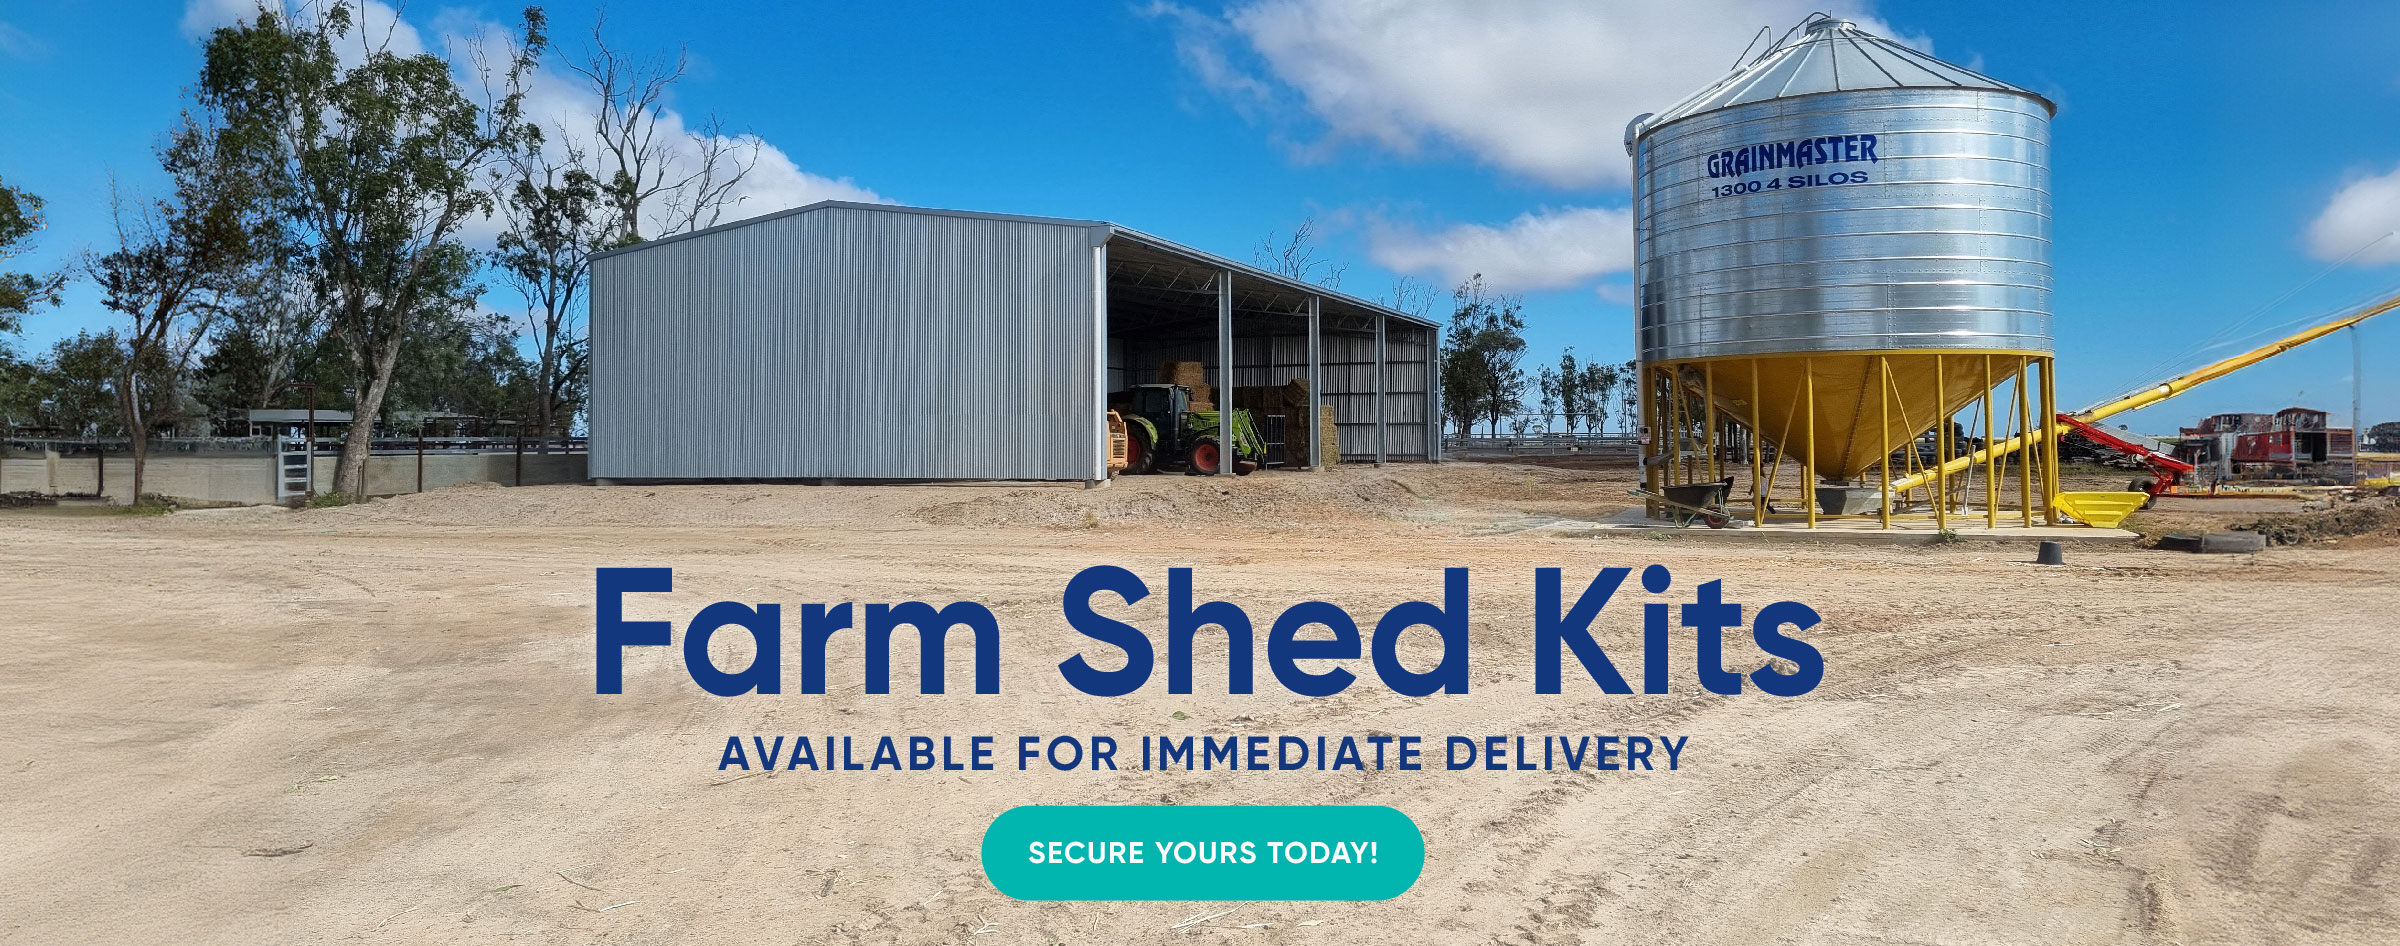 Farm Shed Kits